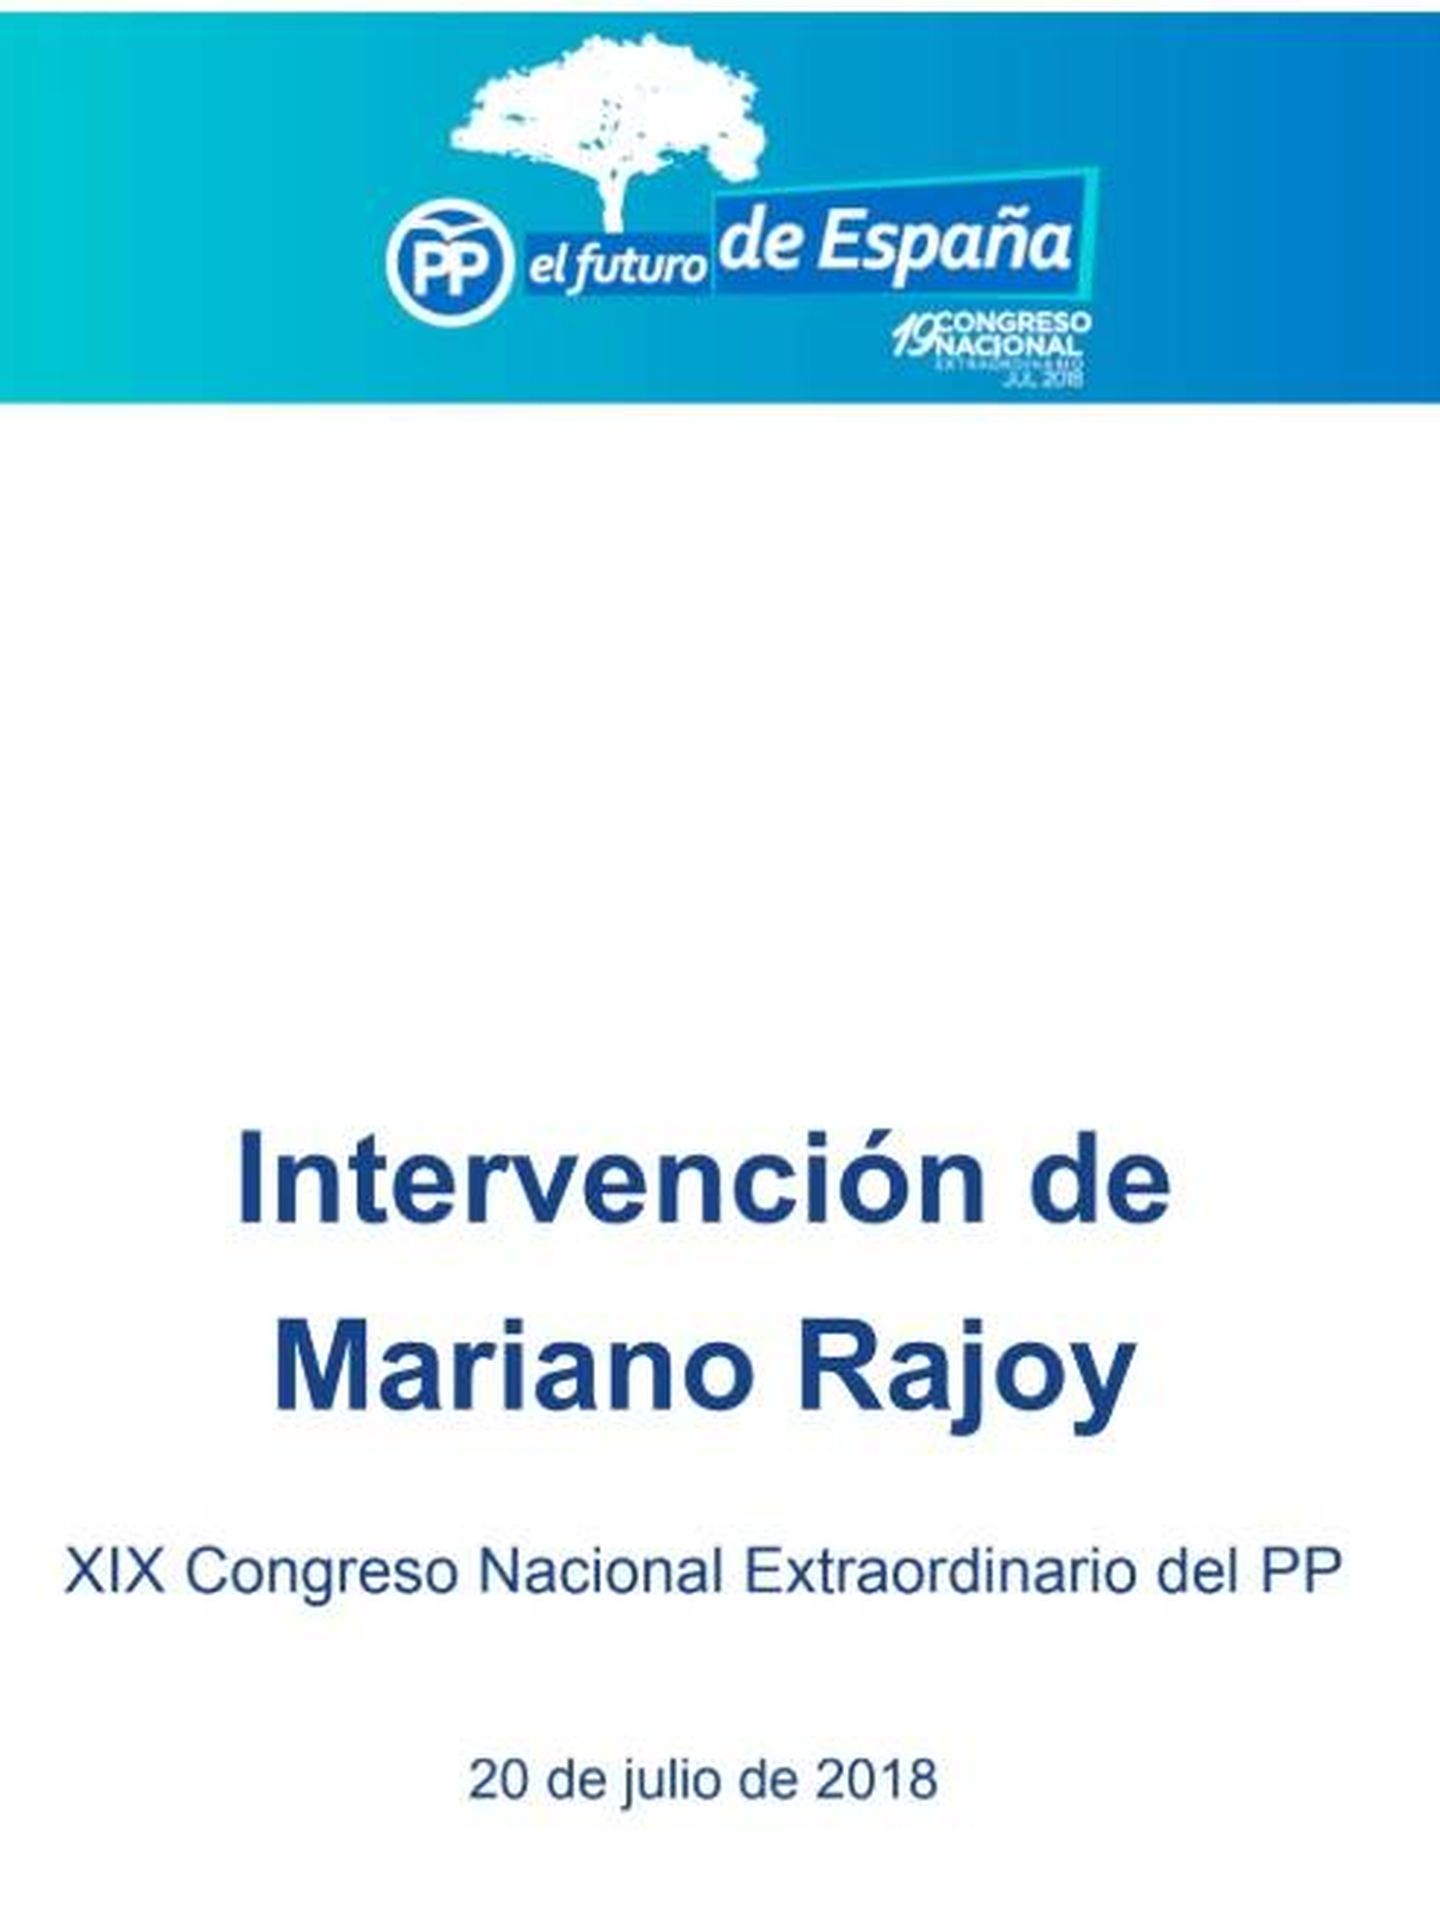 Intervención completa de Mariano Rajoy.